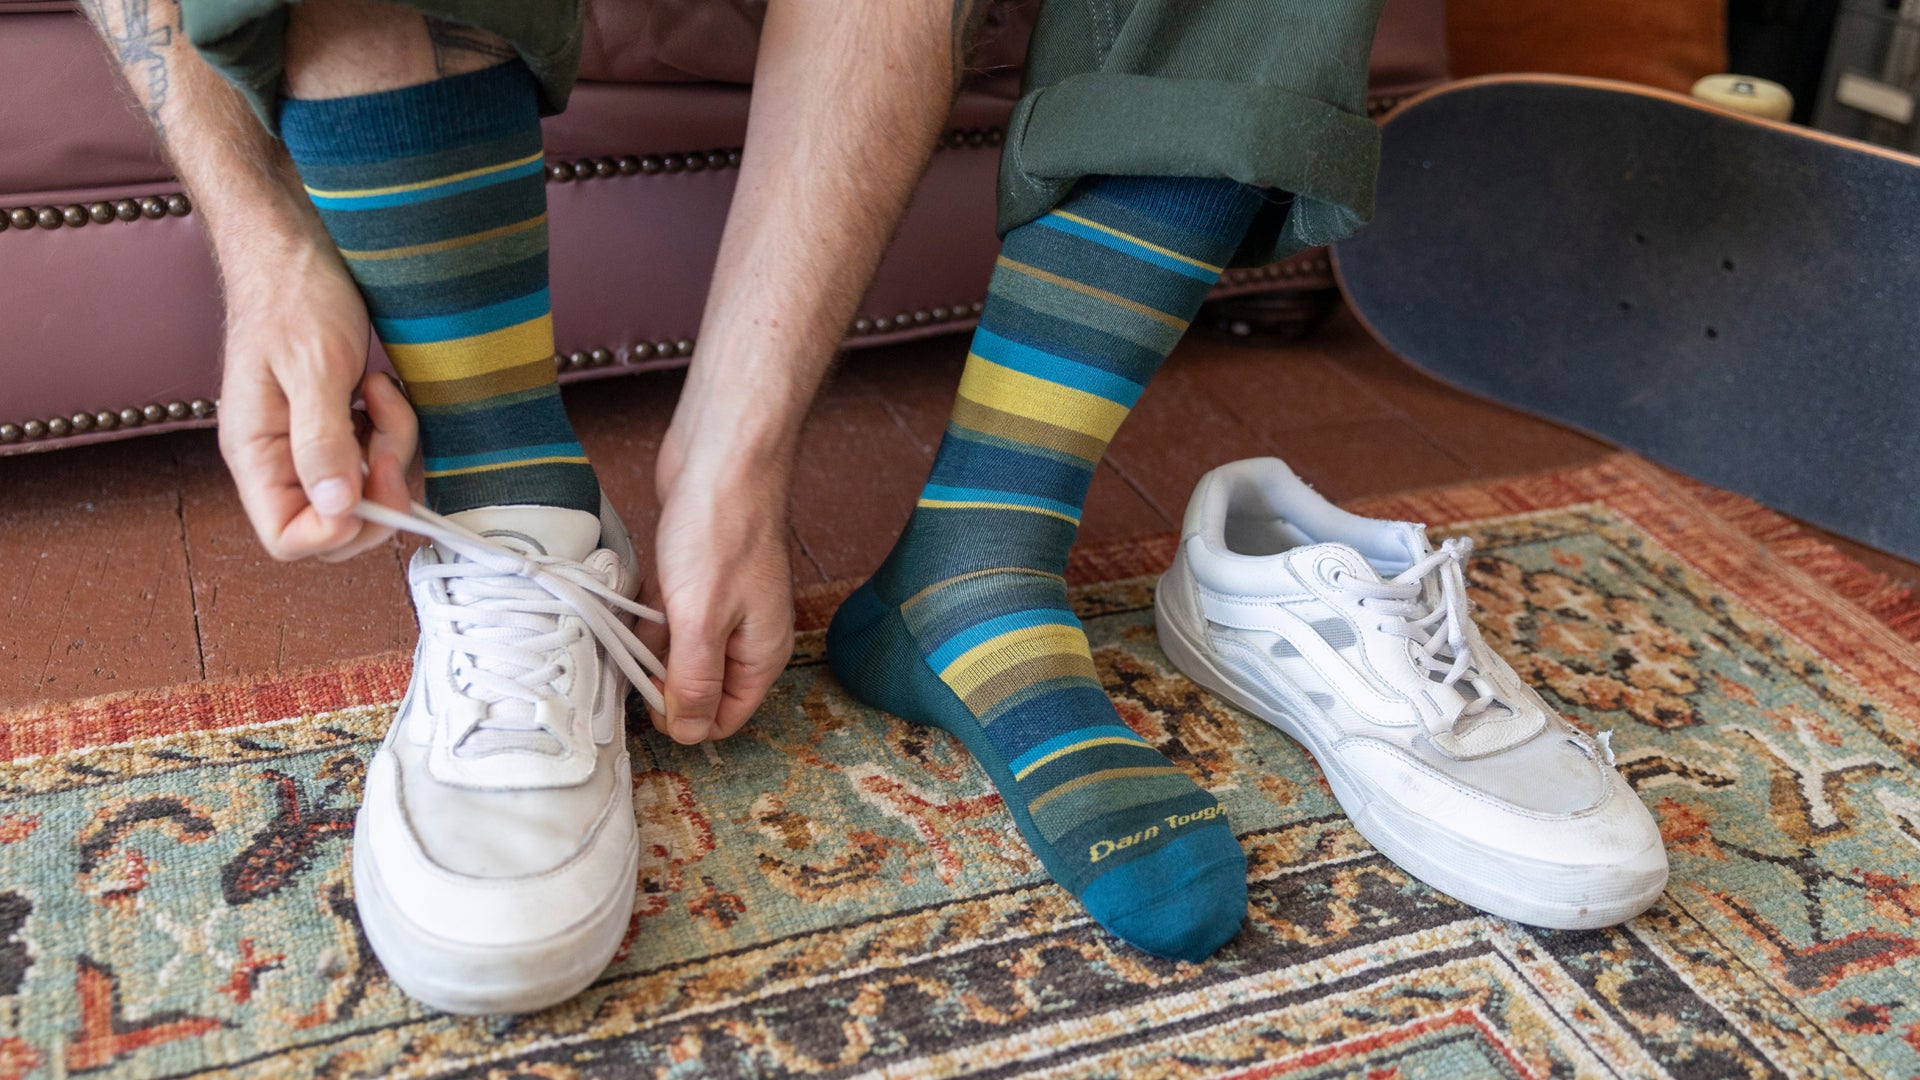 Mid-calf Merino Cool Dress Socks, Men's Socks